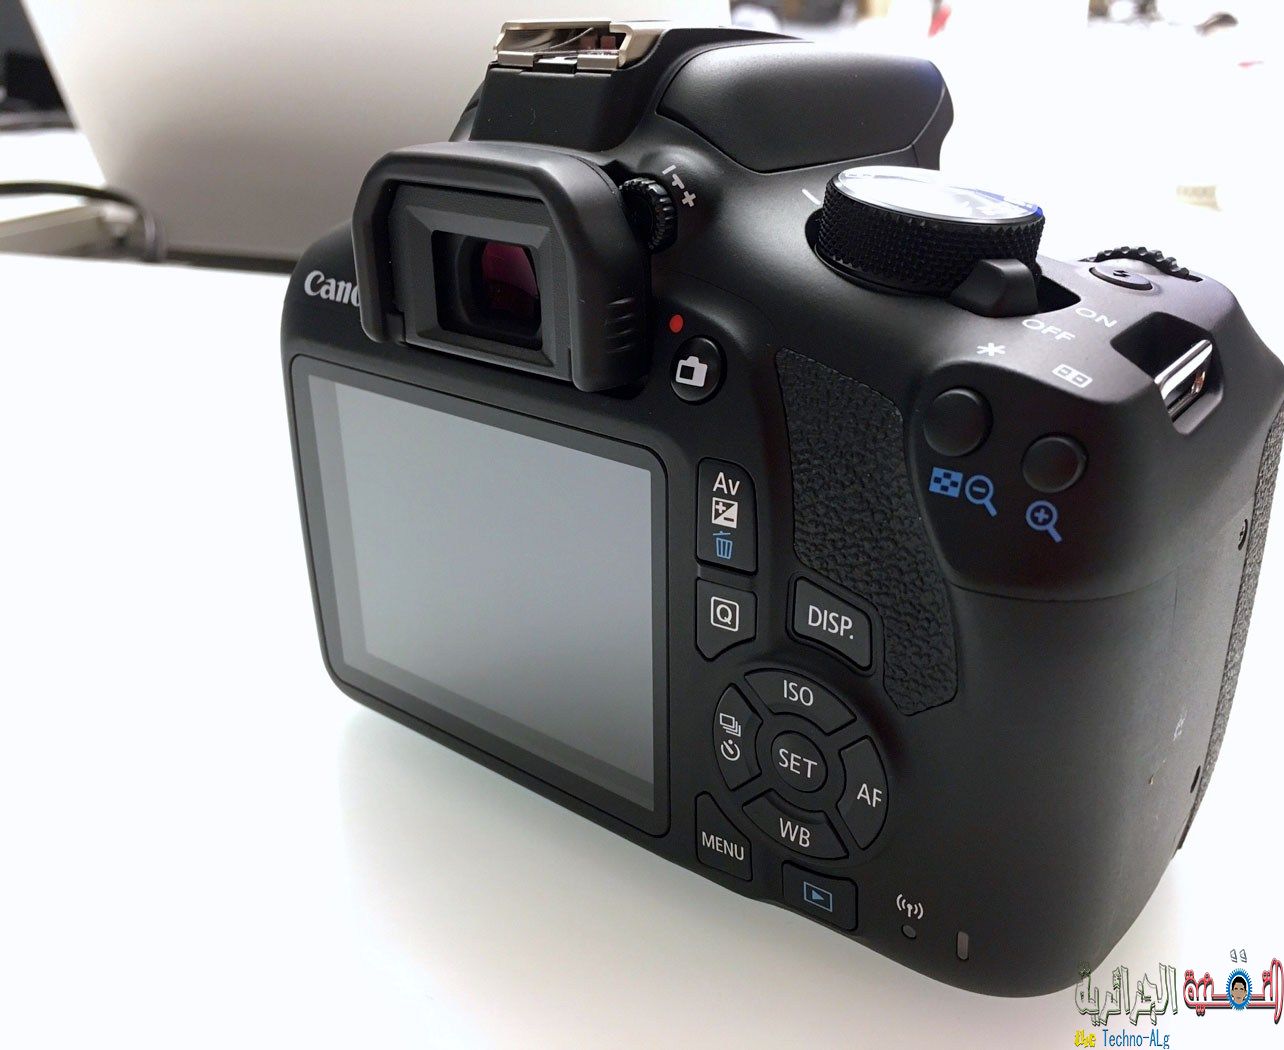 Canon تطلق كاميرة Rebel T6 من اجل المبتدئين في التصوير - تقنيات